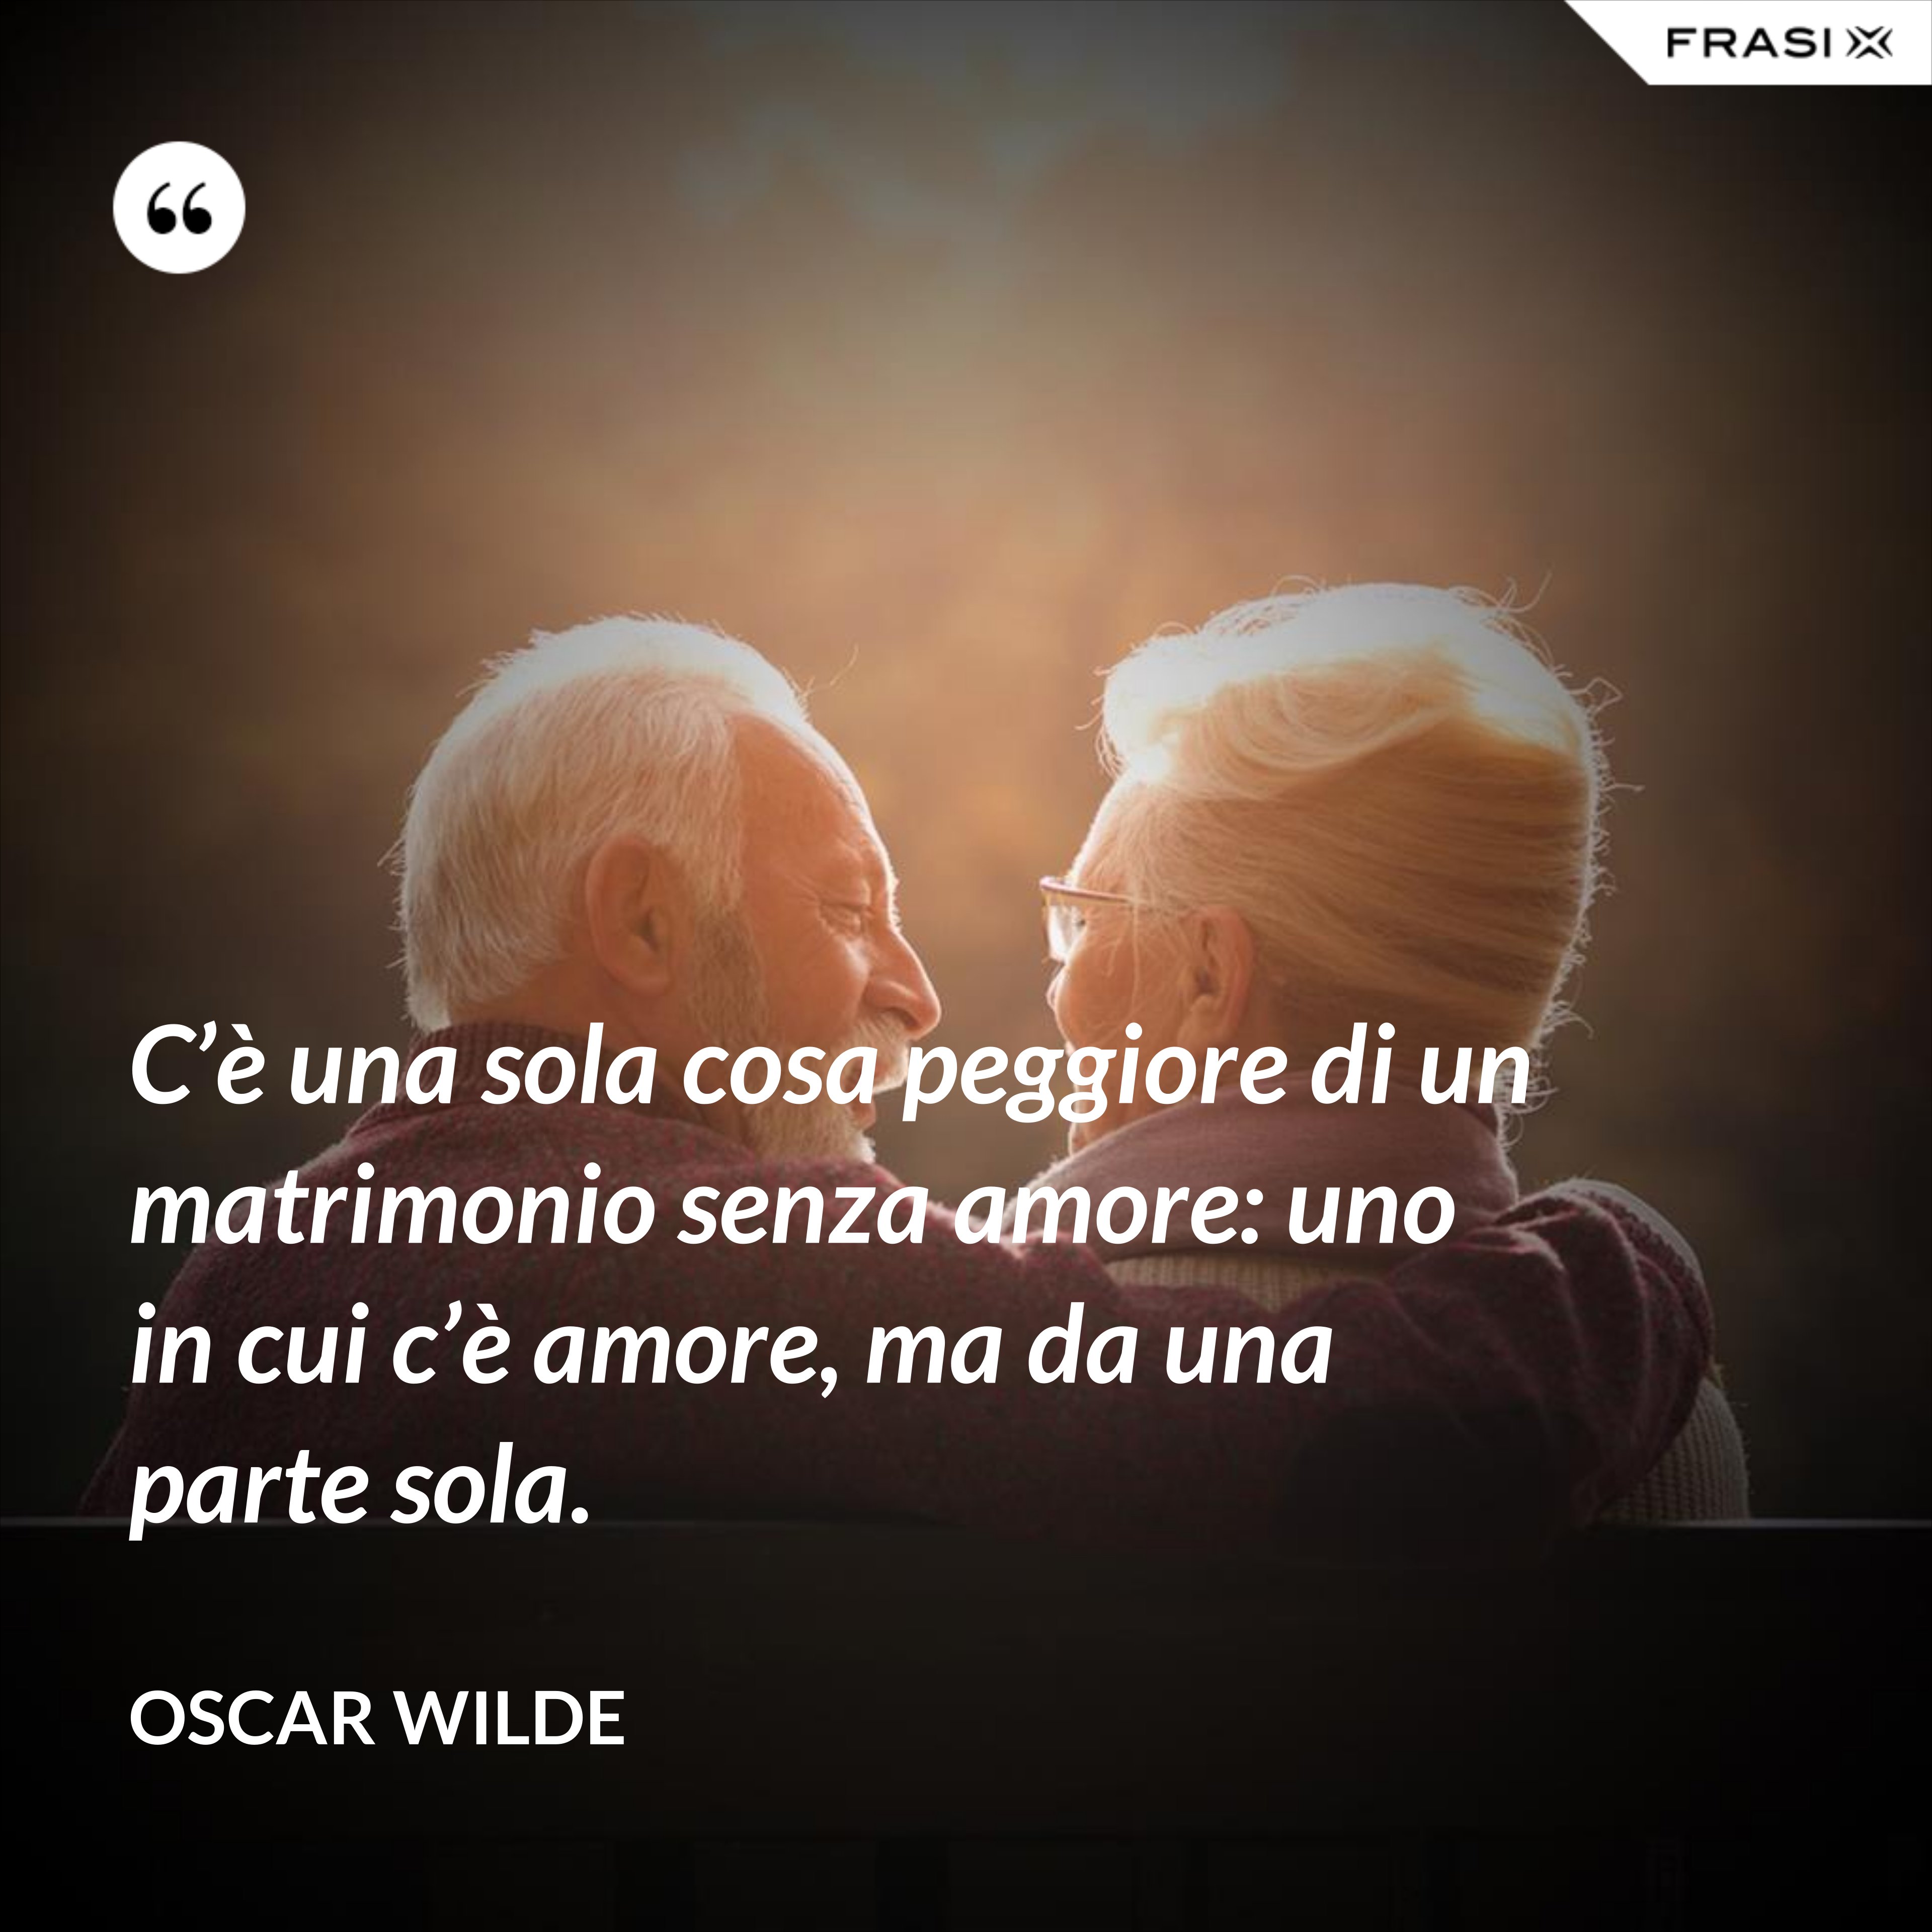 C’è una sola cosa peggiore di un matrimonio senza amore: uno in cui c’è amore, ma da una parte sola. - Oscar Wilde